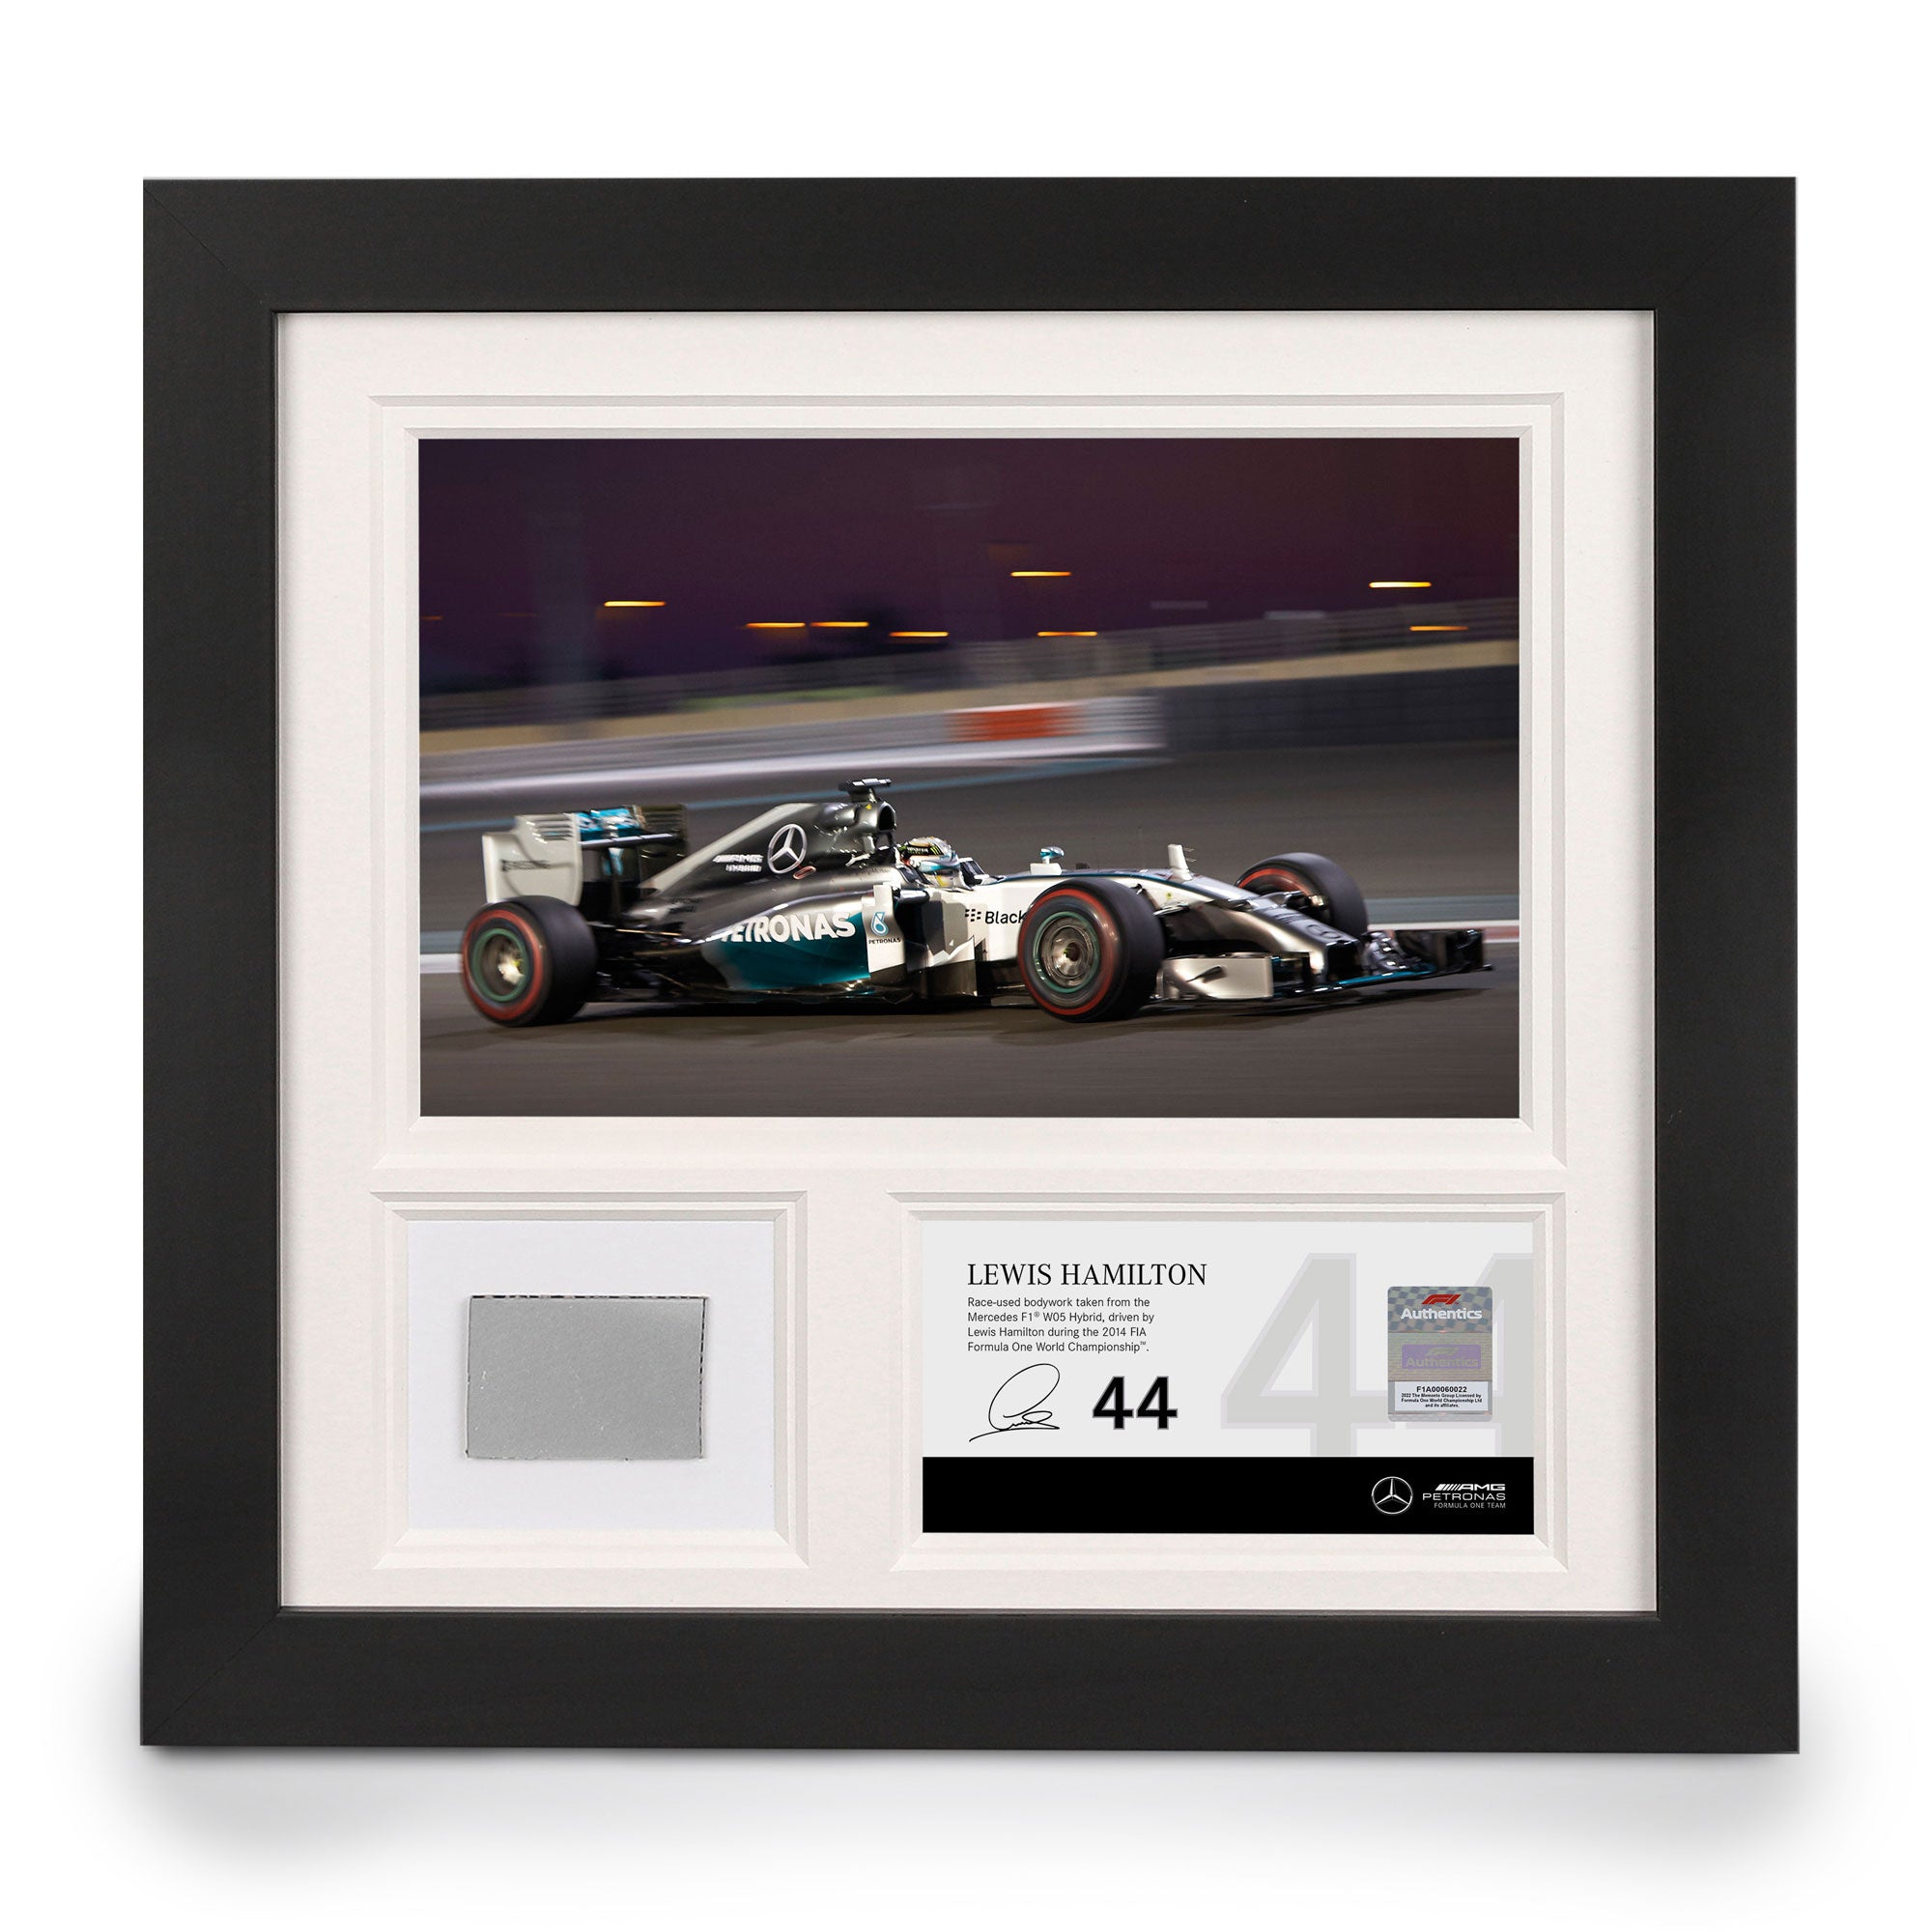 Lewis Hamilton 2014 Bodywork & Photo – Abu Dhabi GP